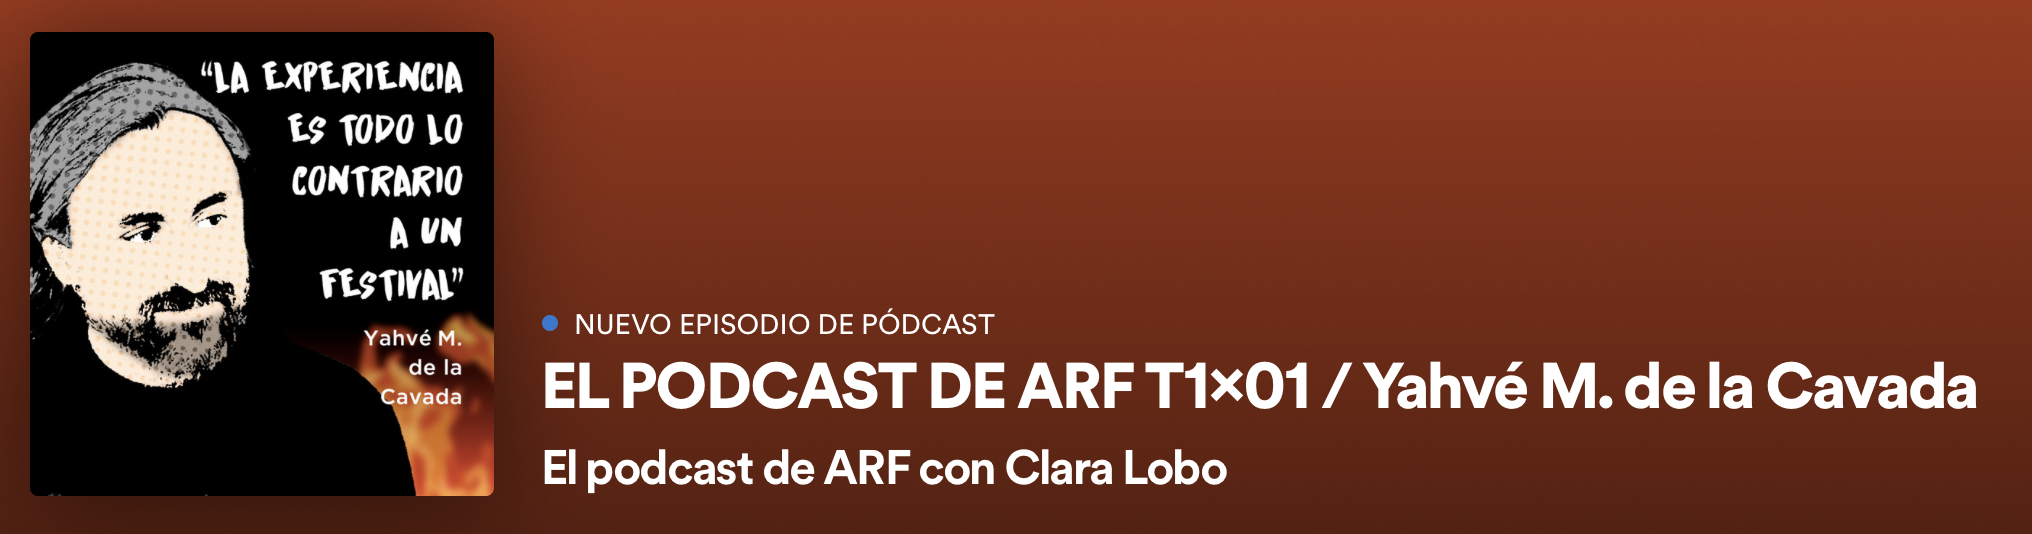 El Podcast de ARF, primer episodio con Yahvé M. de la Cavada en Spotify